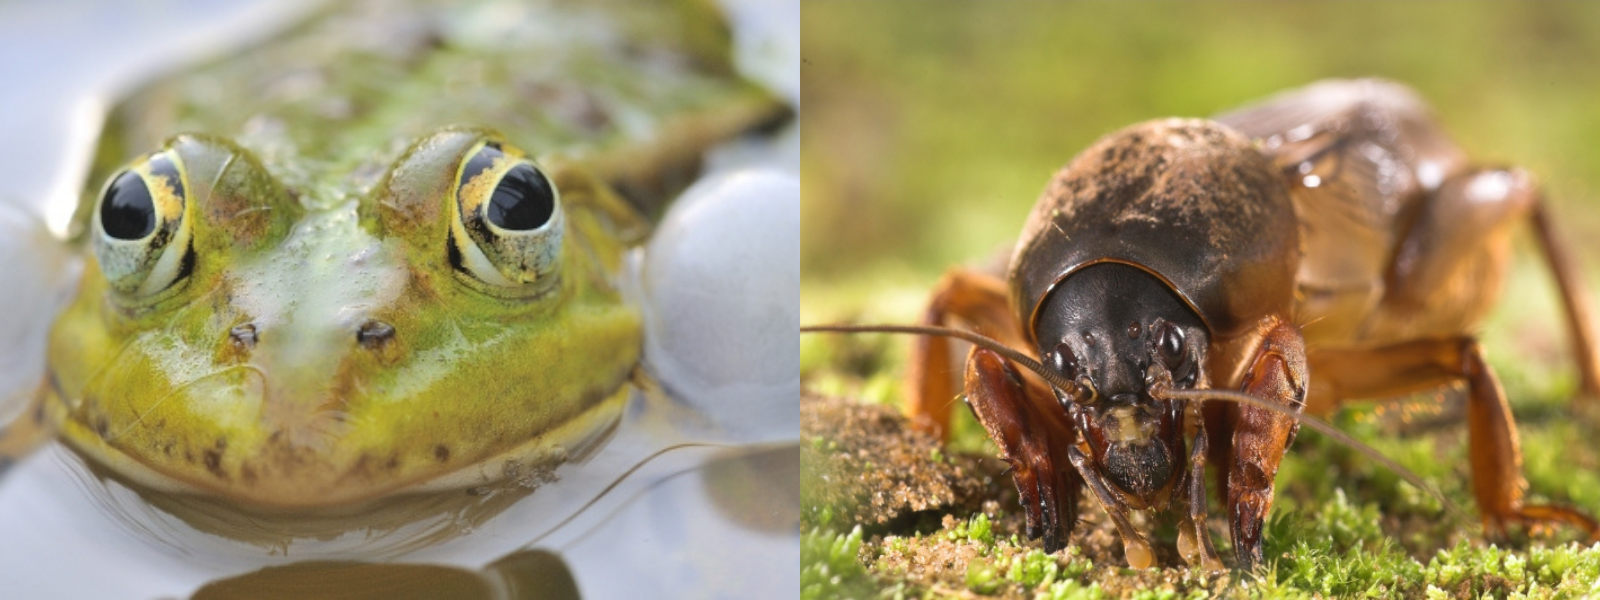 À grauche : une grenouille verte qui coasse, à droite : une courtilière